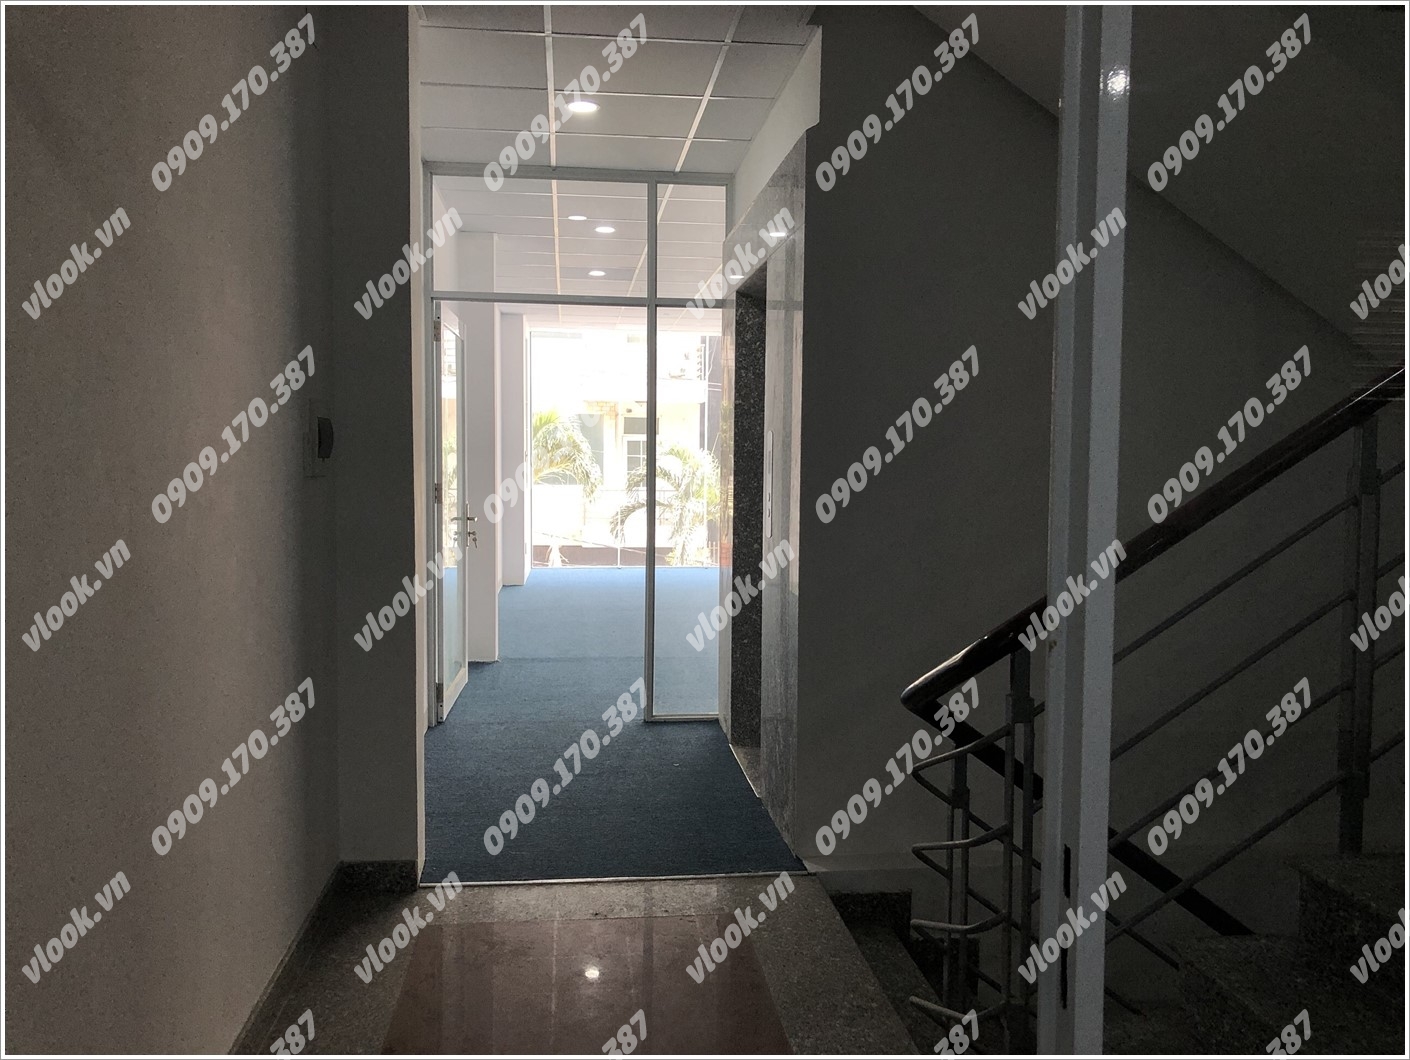 Cao ốc cho thuê văn phòng Tòa nhà Đông Nguyên, Điện Biên Phủ, Quận Bình Thạnh, TPHCM - vlook.vn